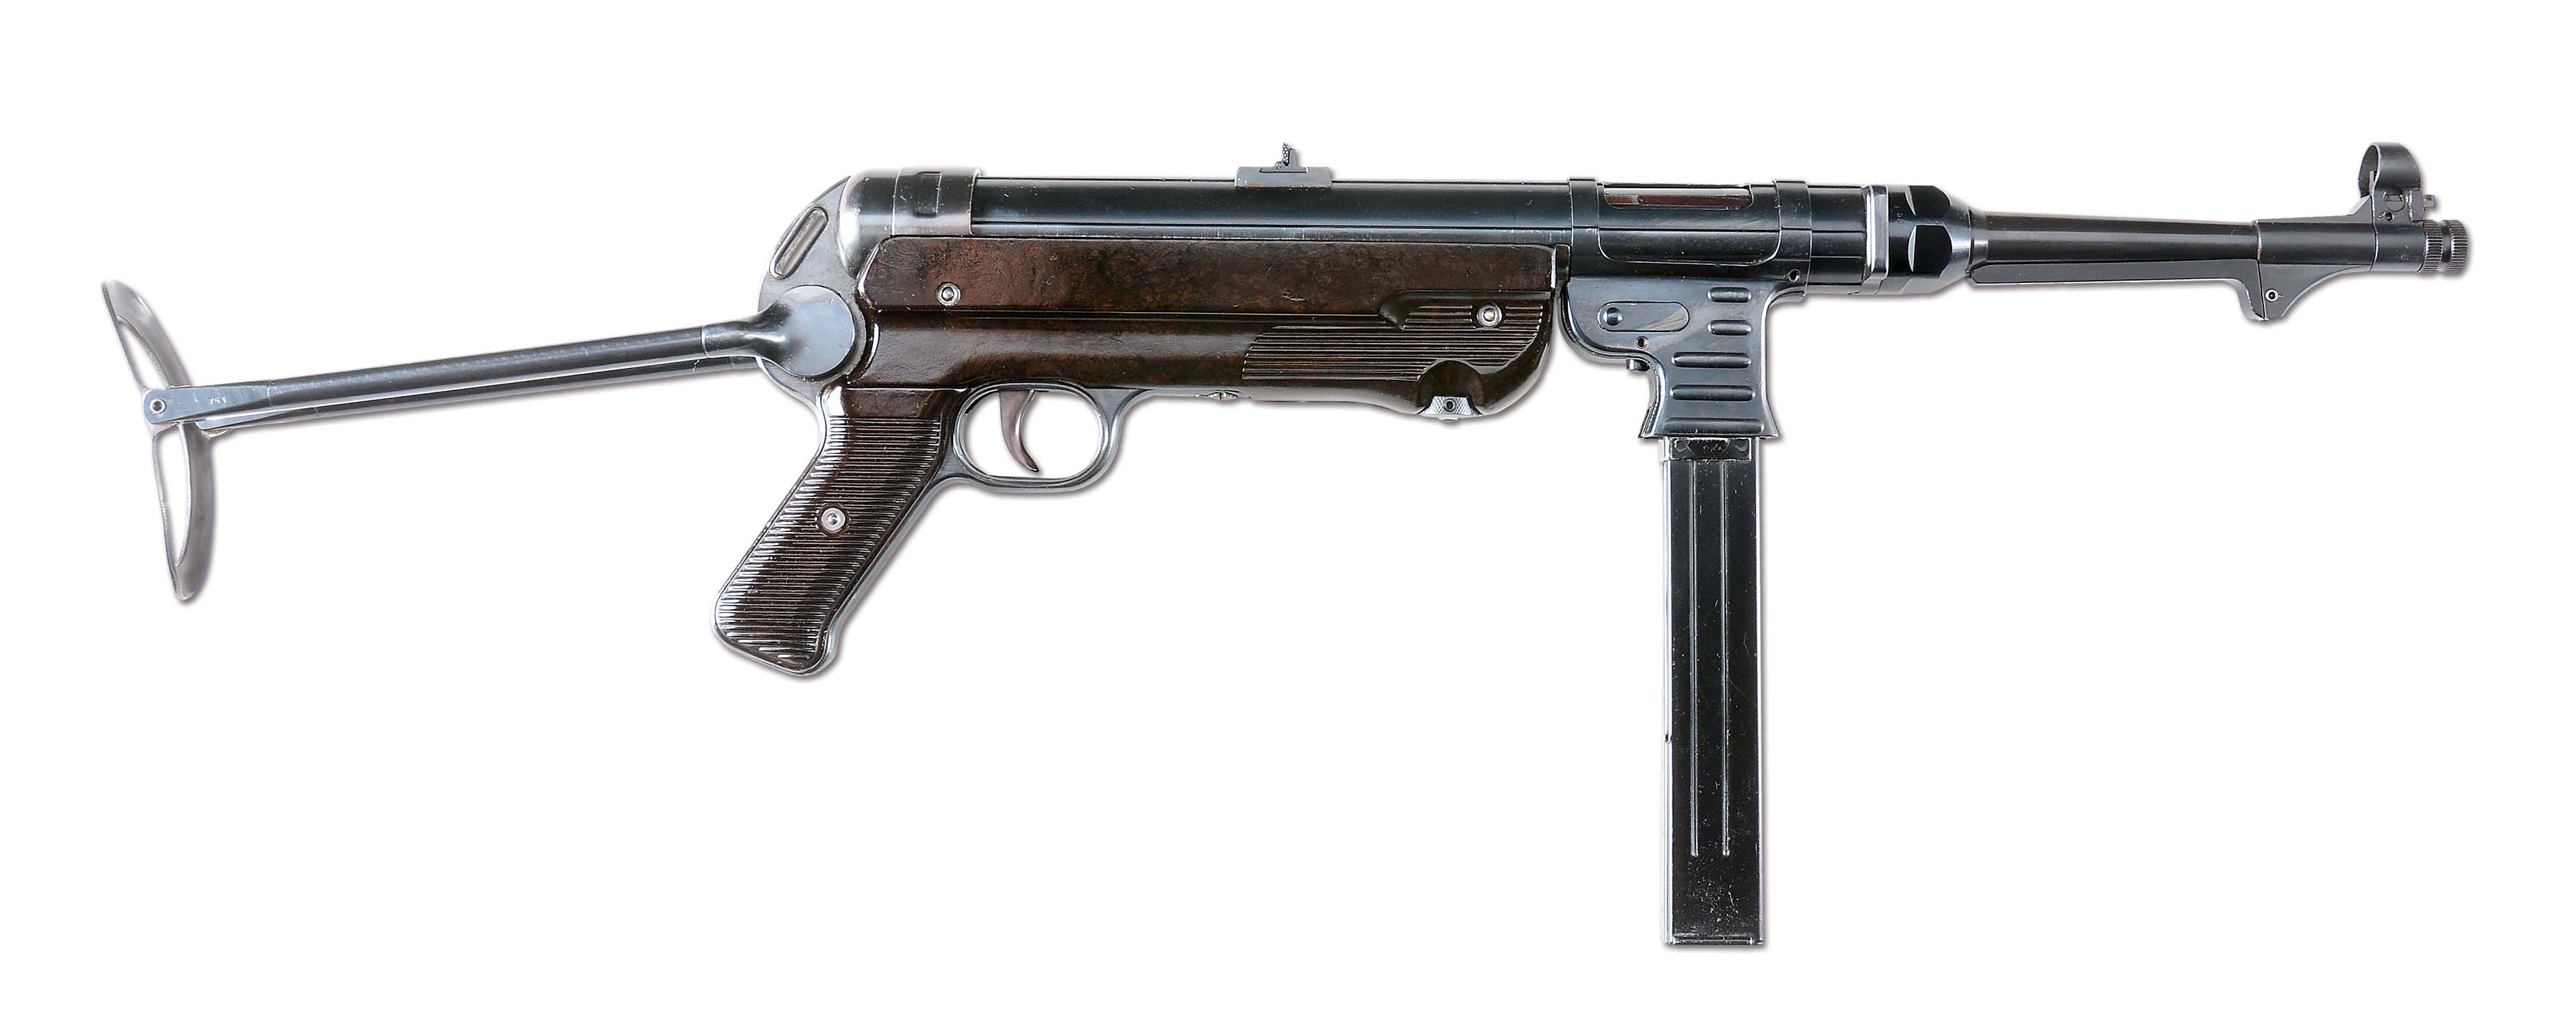 Какое оружие вермахта. Mp40 Auswerfer. Немецкое стрелковое оружие второй мировой войны 1939-1945 гг. Шунков оружие вермахта.